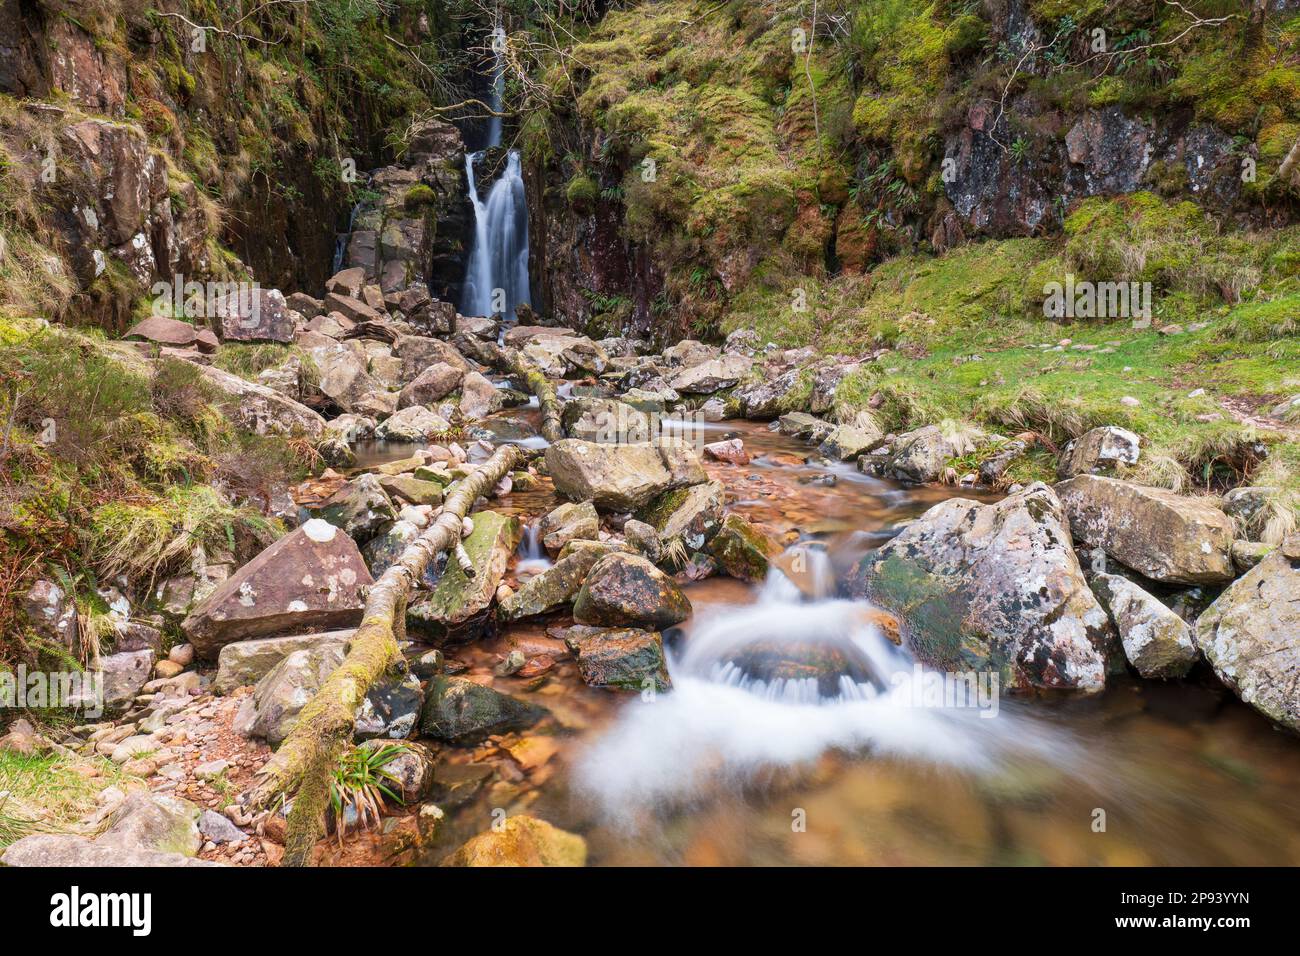 Angleterre, Cumbria, parc national de Lake District. Scale Force près du village de Buttermere dans le parc national du district du lac. Banque D'Images